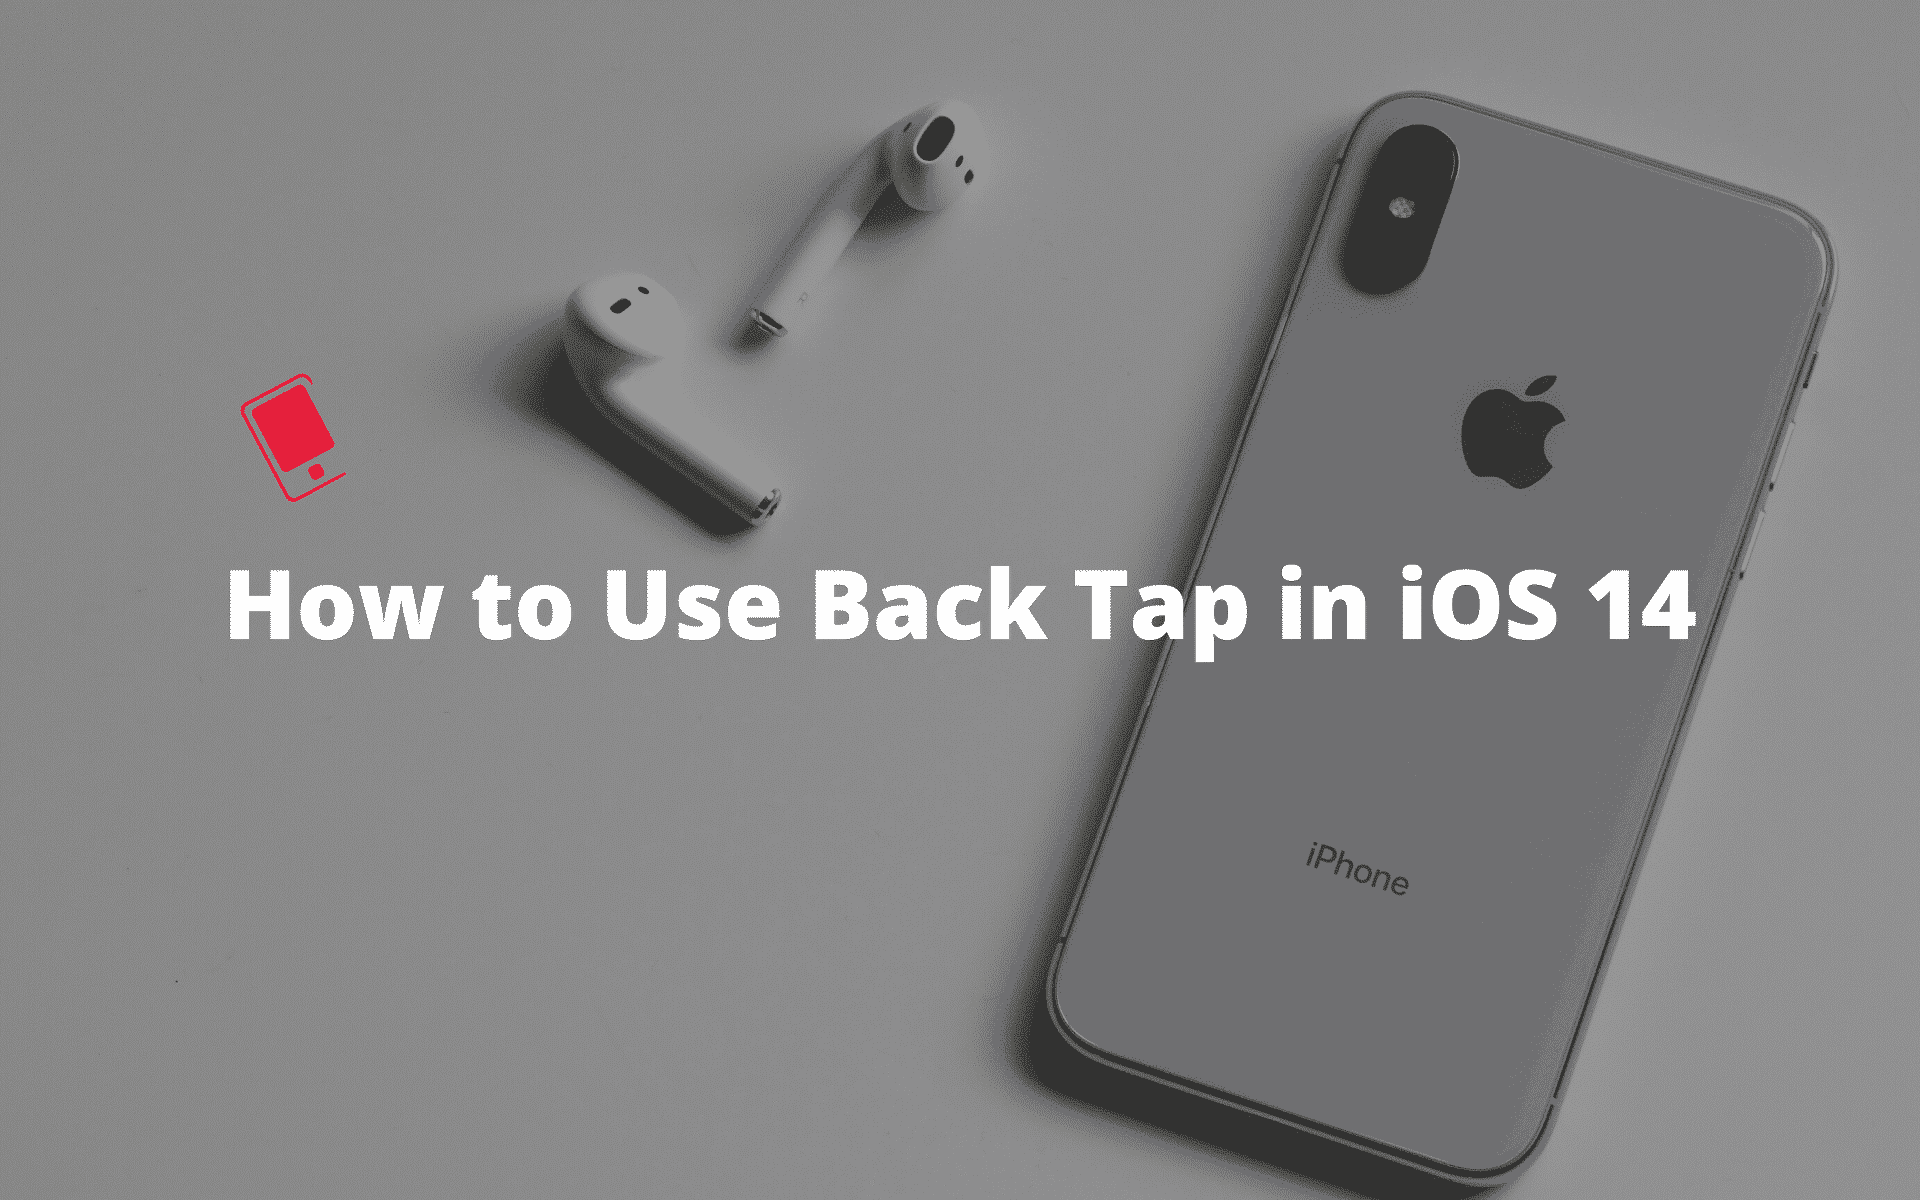 Cách sử dụng Back Tap trên iPhone iOS 14 để mở ứng dụng, chụp màn hình,... chỉ bằng vài chạm